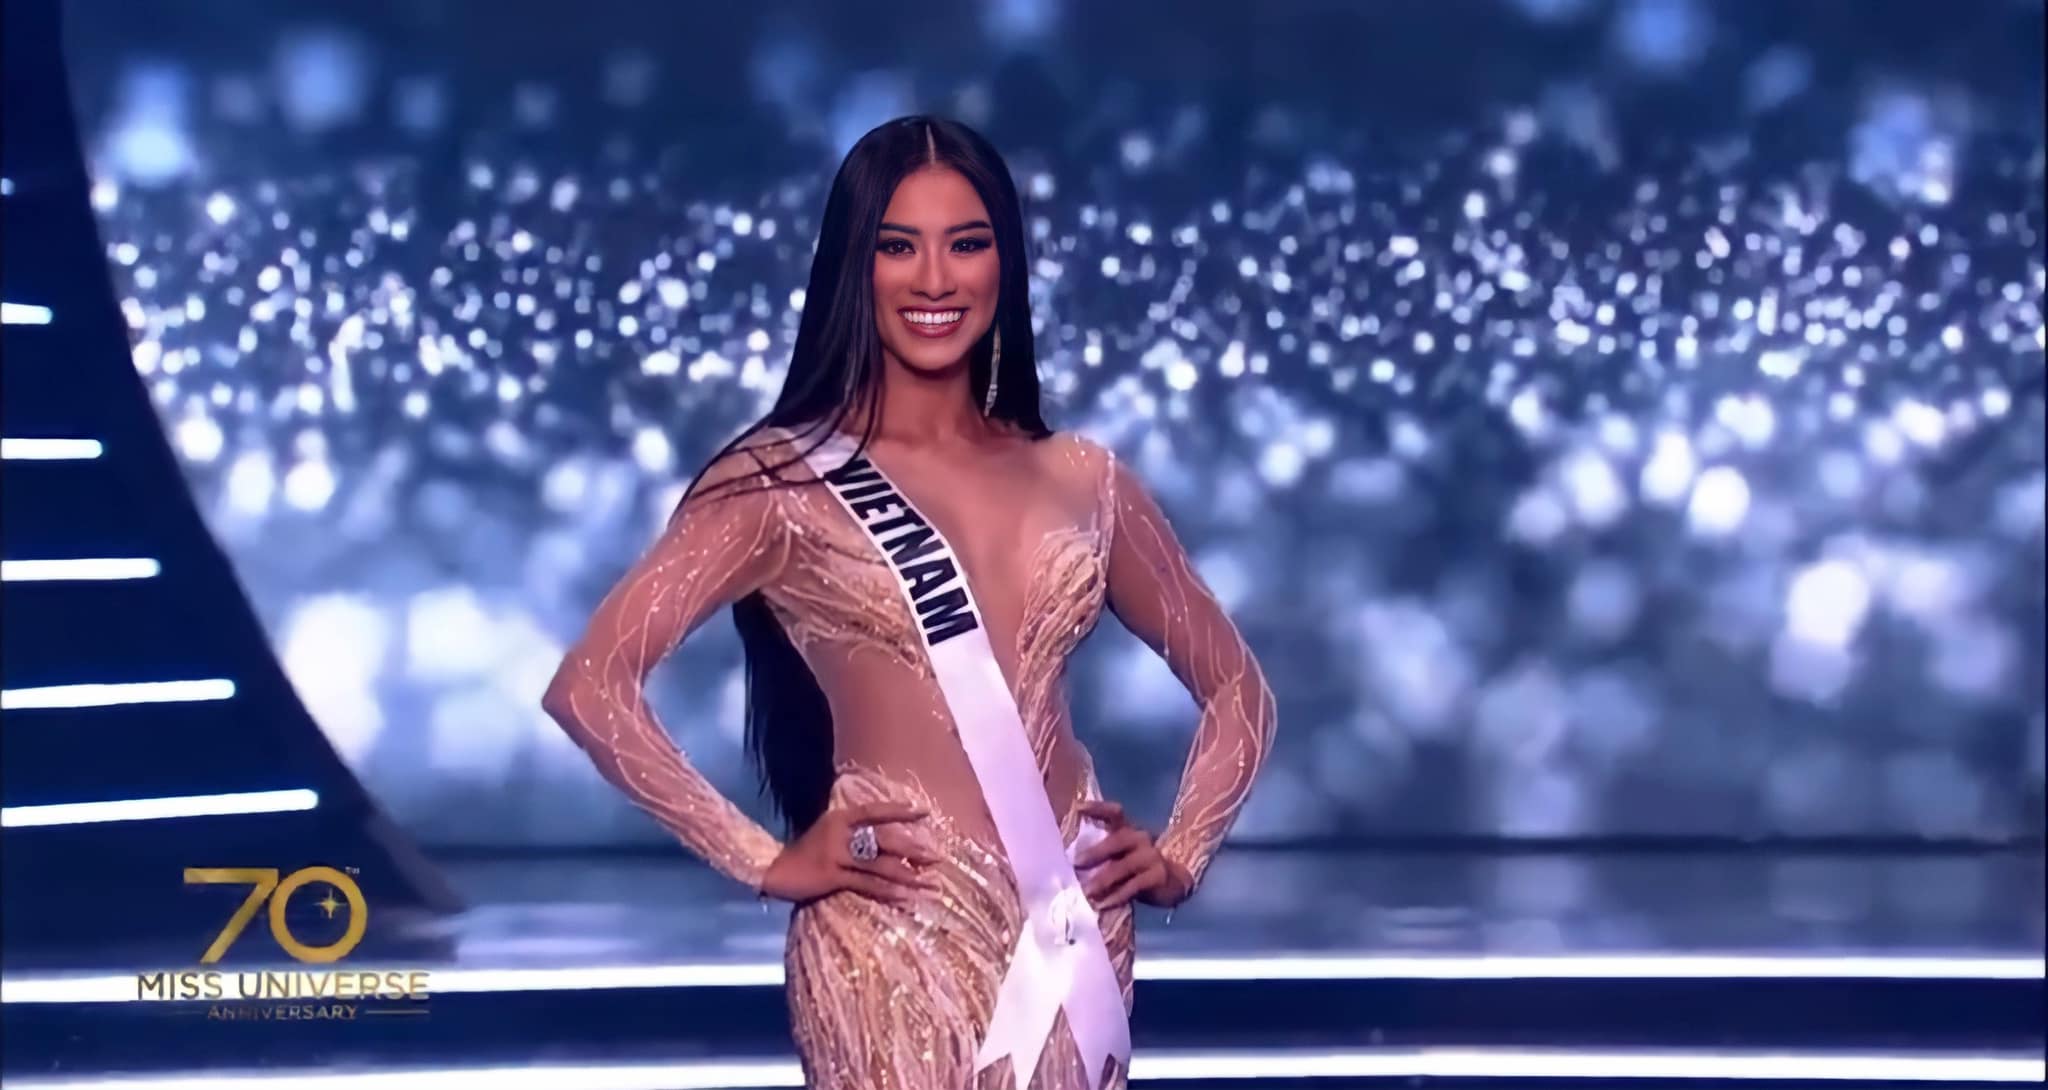 HHen Niê sang Israel cổ vũ Kim Duyên thi chung kết Miss Universe 2021?